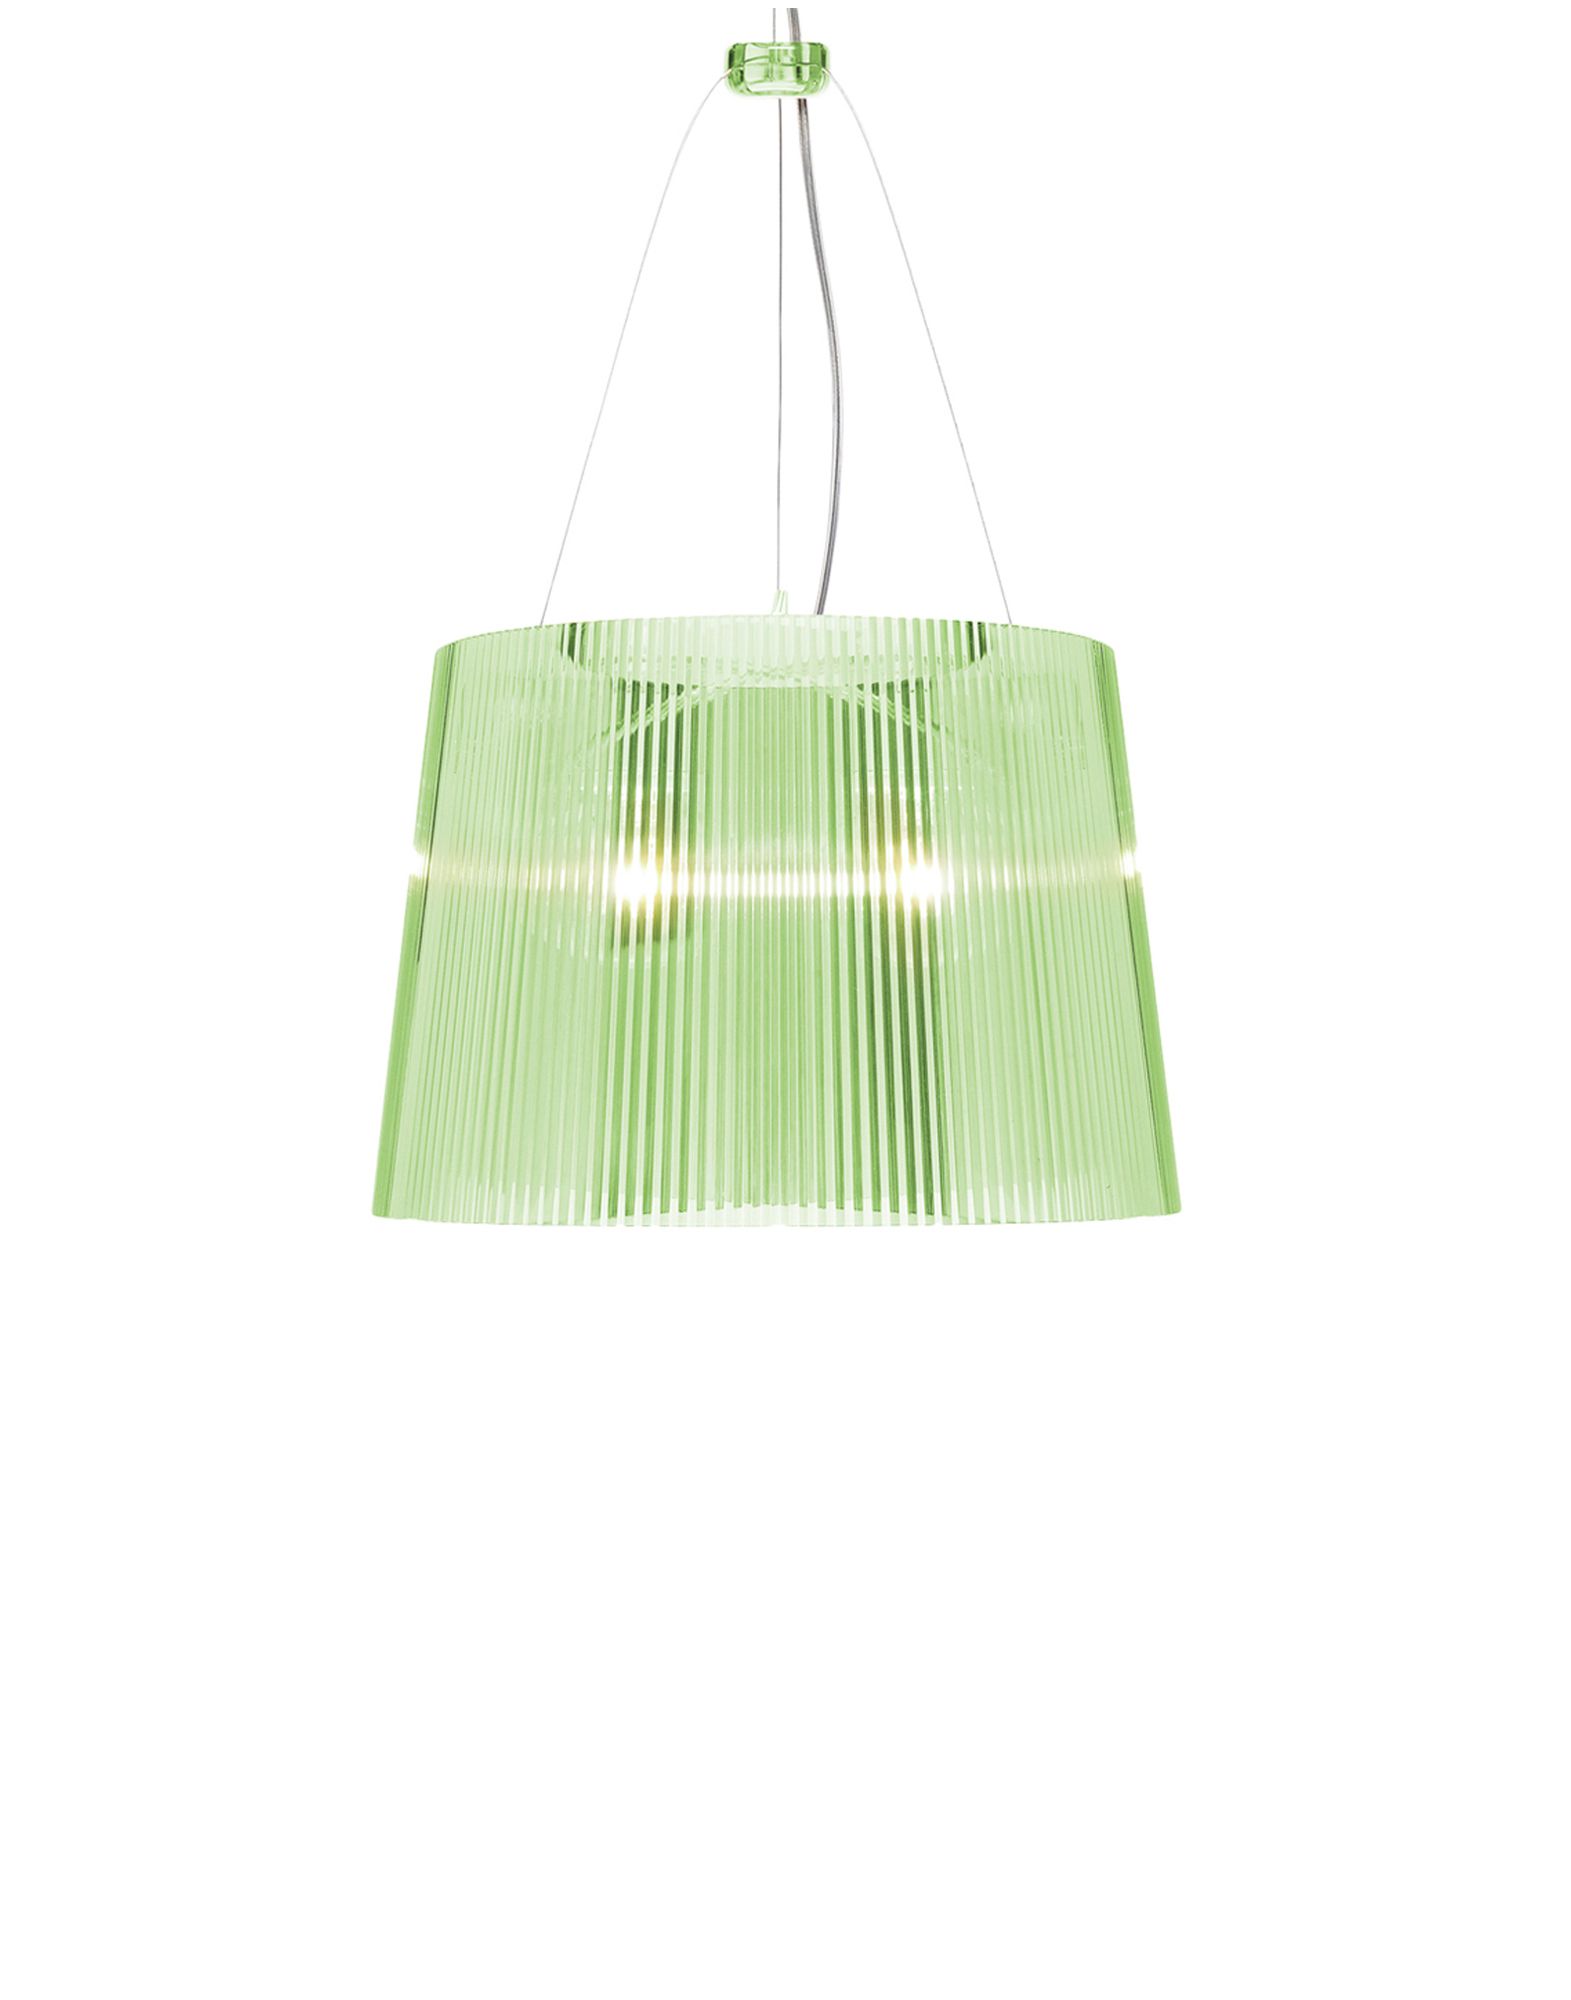 Suspensie Kartell Ge’ design Ferruccio Laviani E27 max 70W h37cm verde transparent sensodays.ro